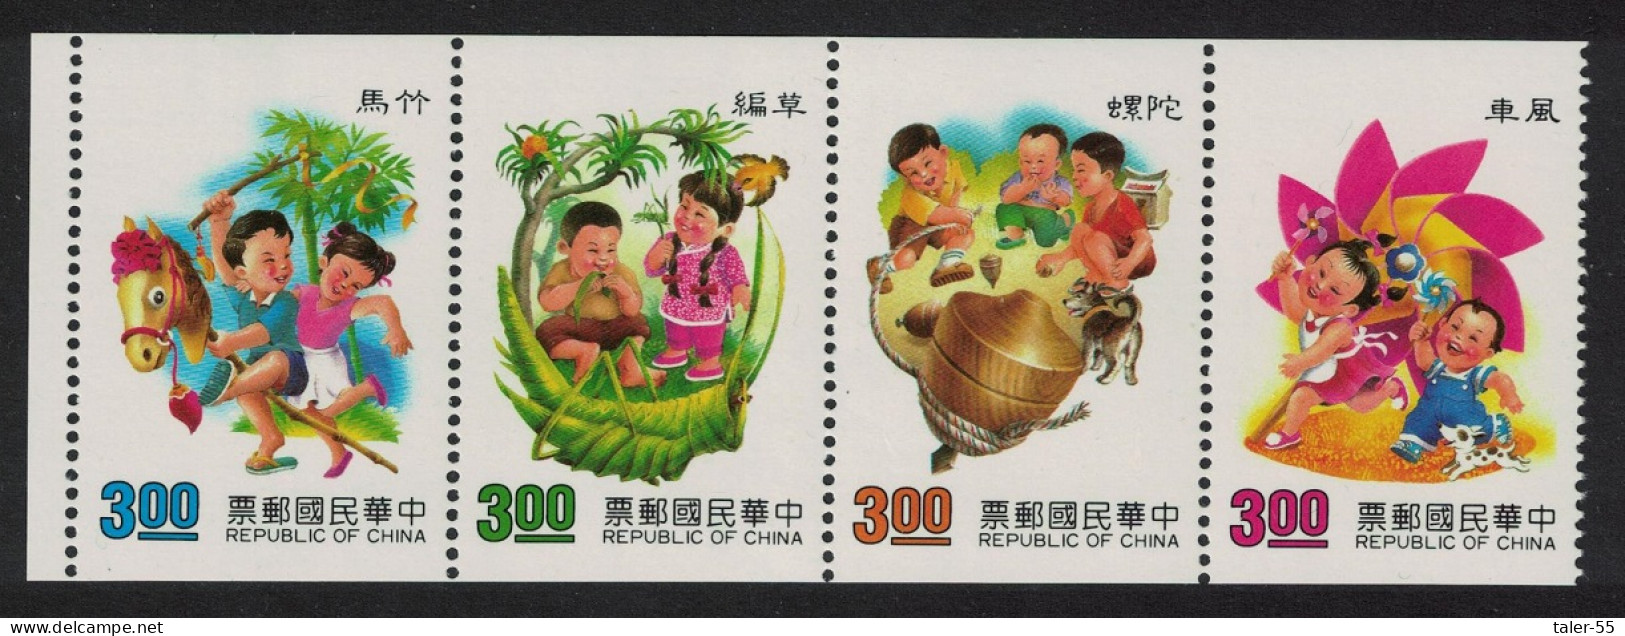 Taiwan Children's Games 1st Series 4v Booklet Pane 1991 MNH SG#1964-1967 MI#1965C-1968C - Ungebraucht